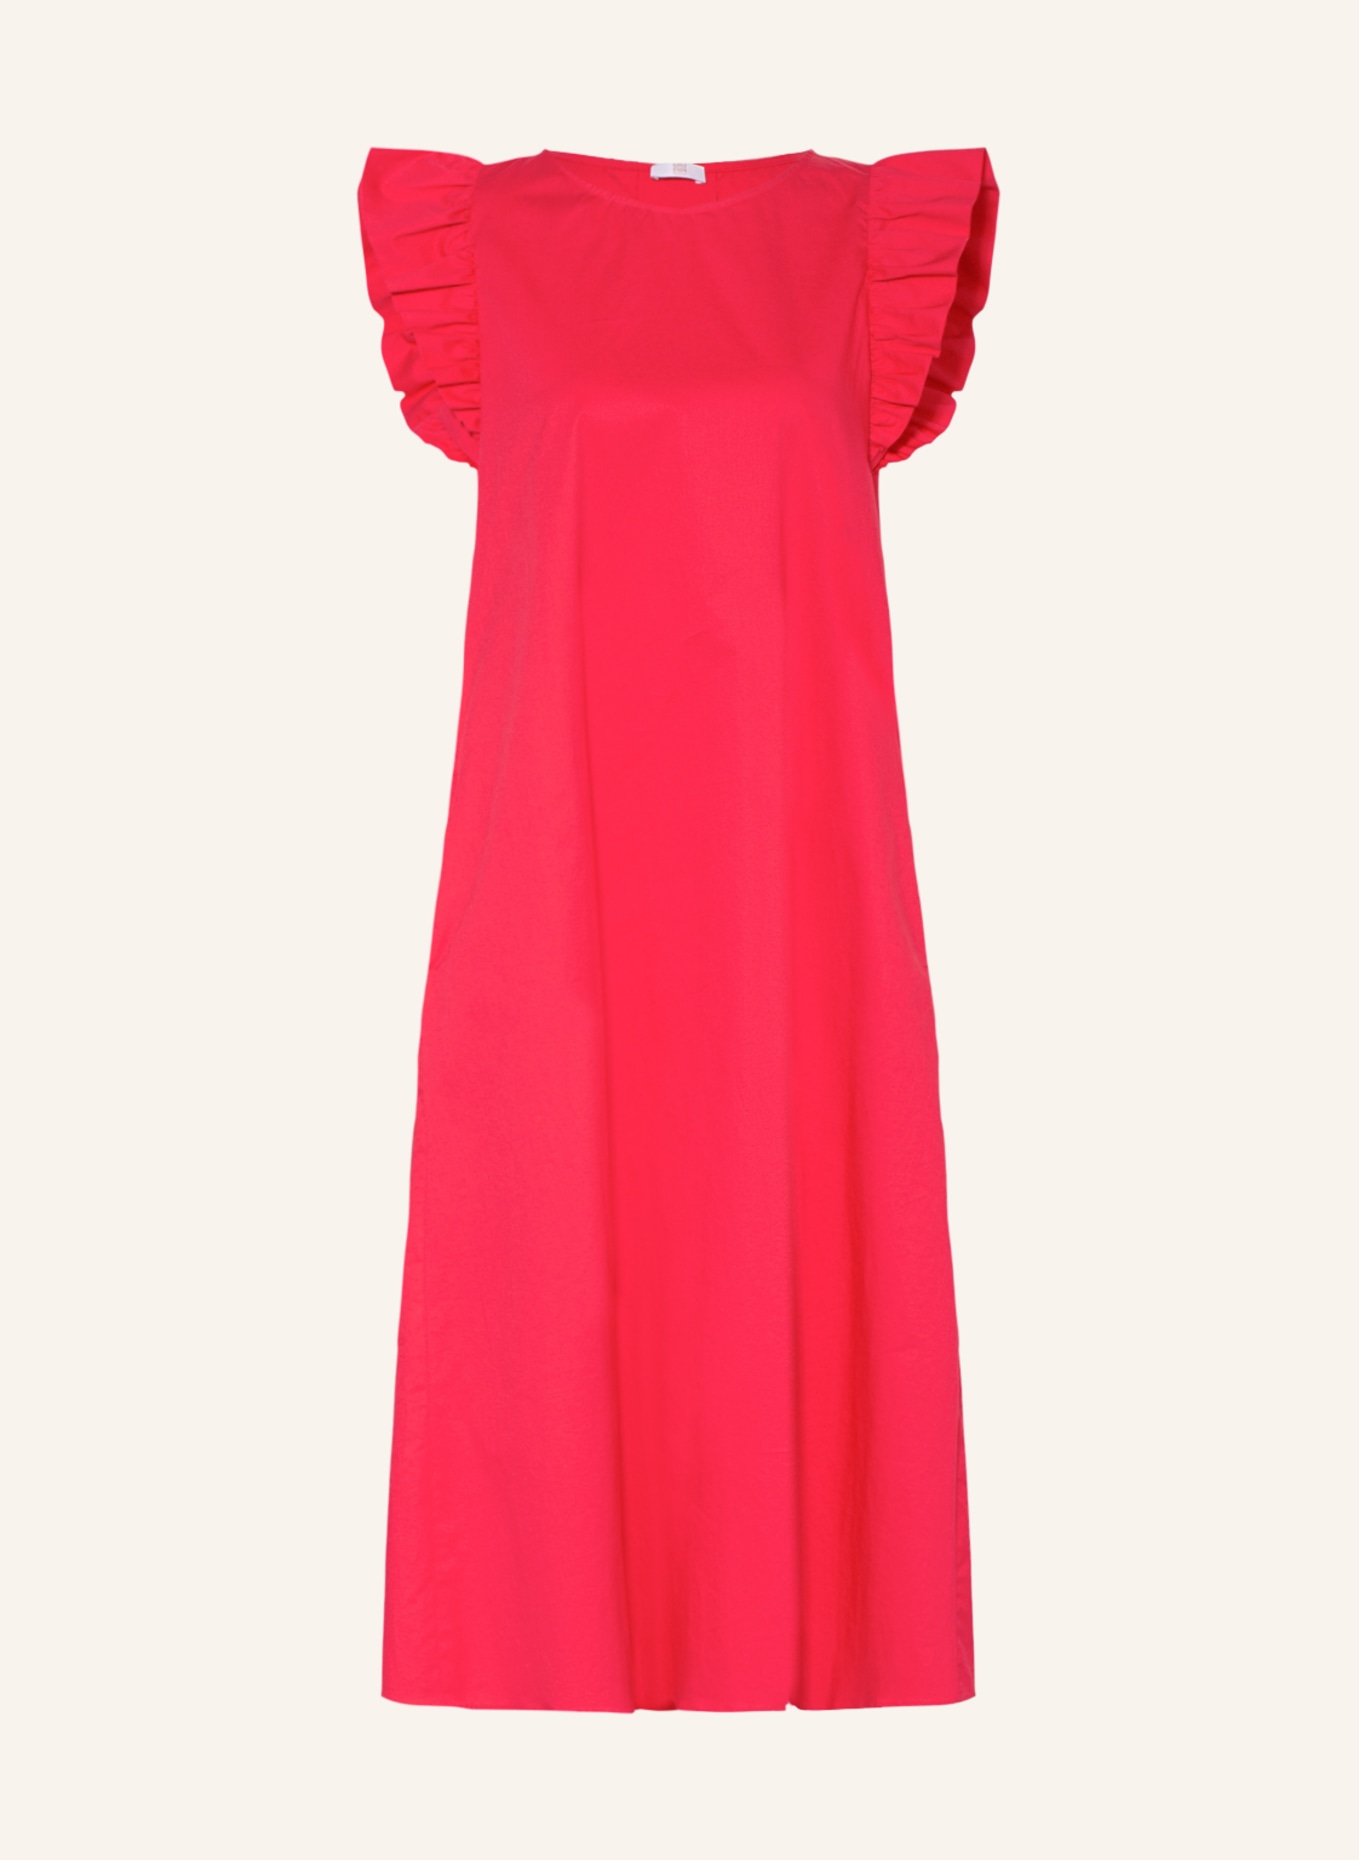 RIANI Dress, Color: FUCHSIA (Image 1)